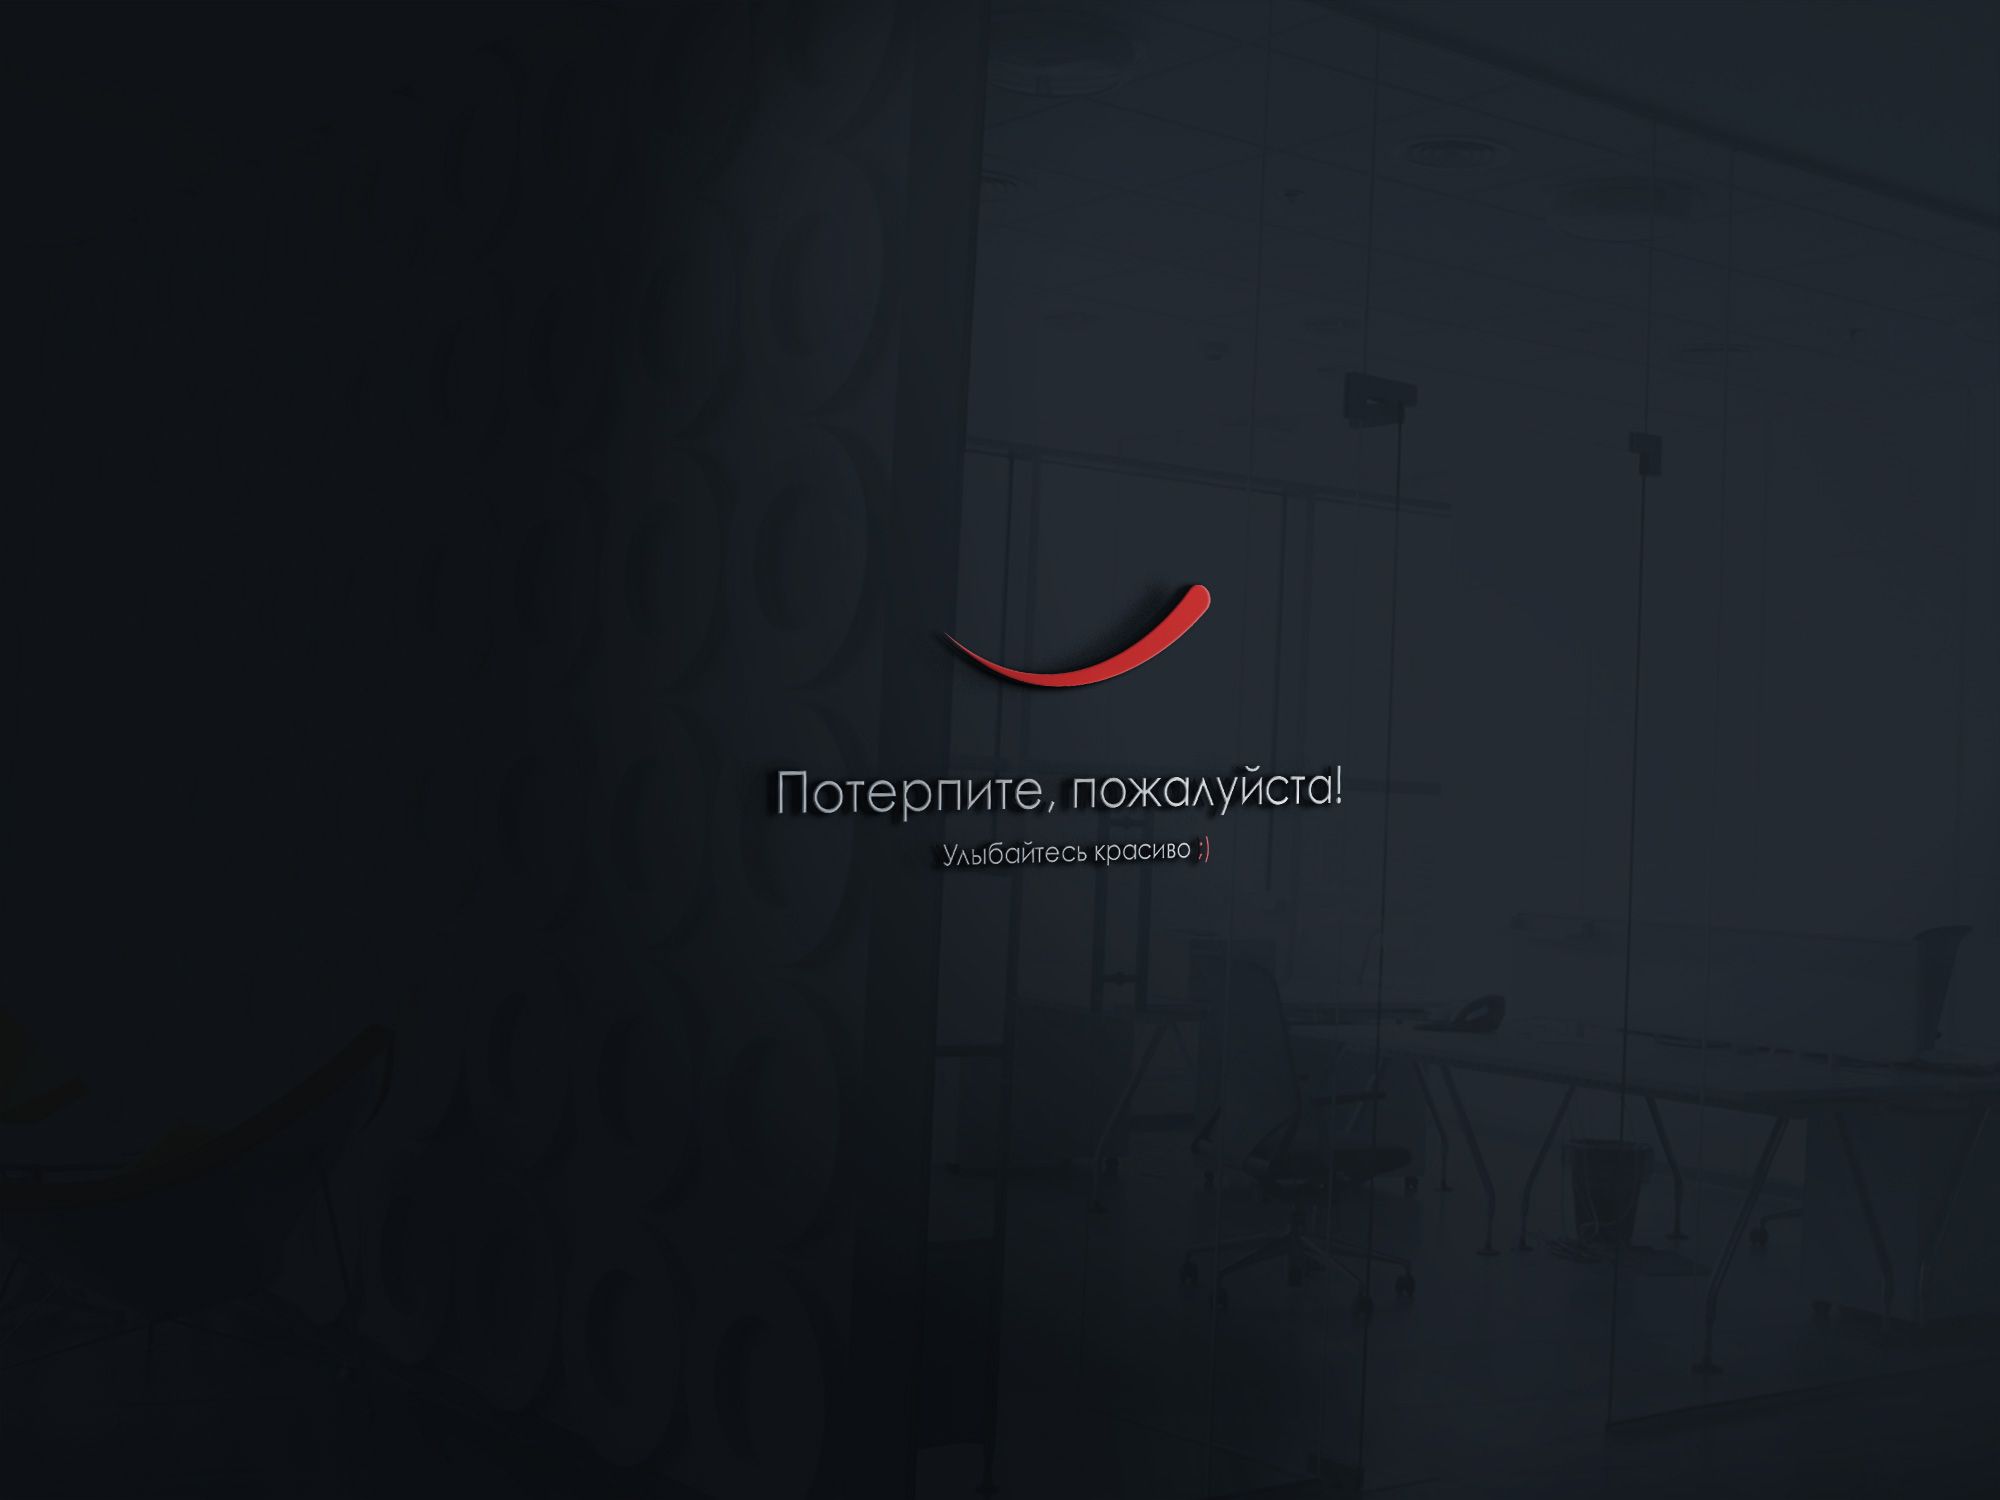 Логотип для Логотип магазина-клиники «Потерпите, пожалуйста!» - дизайнер Alphir